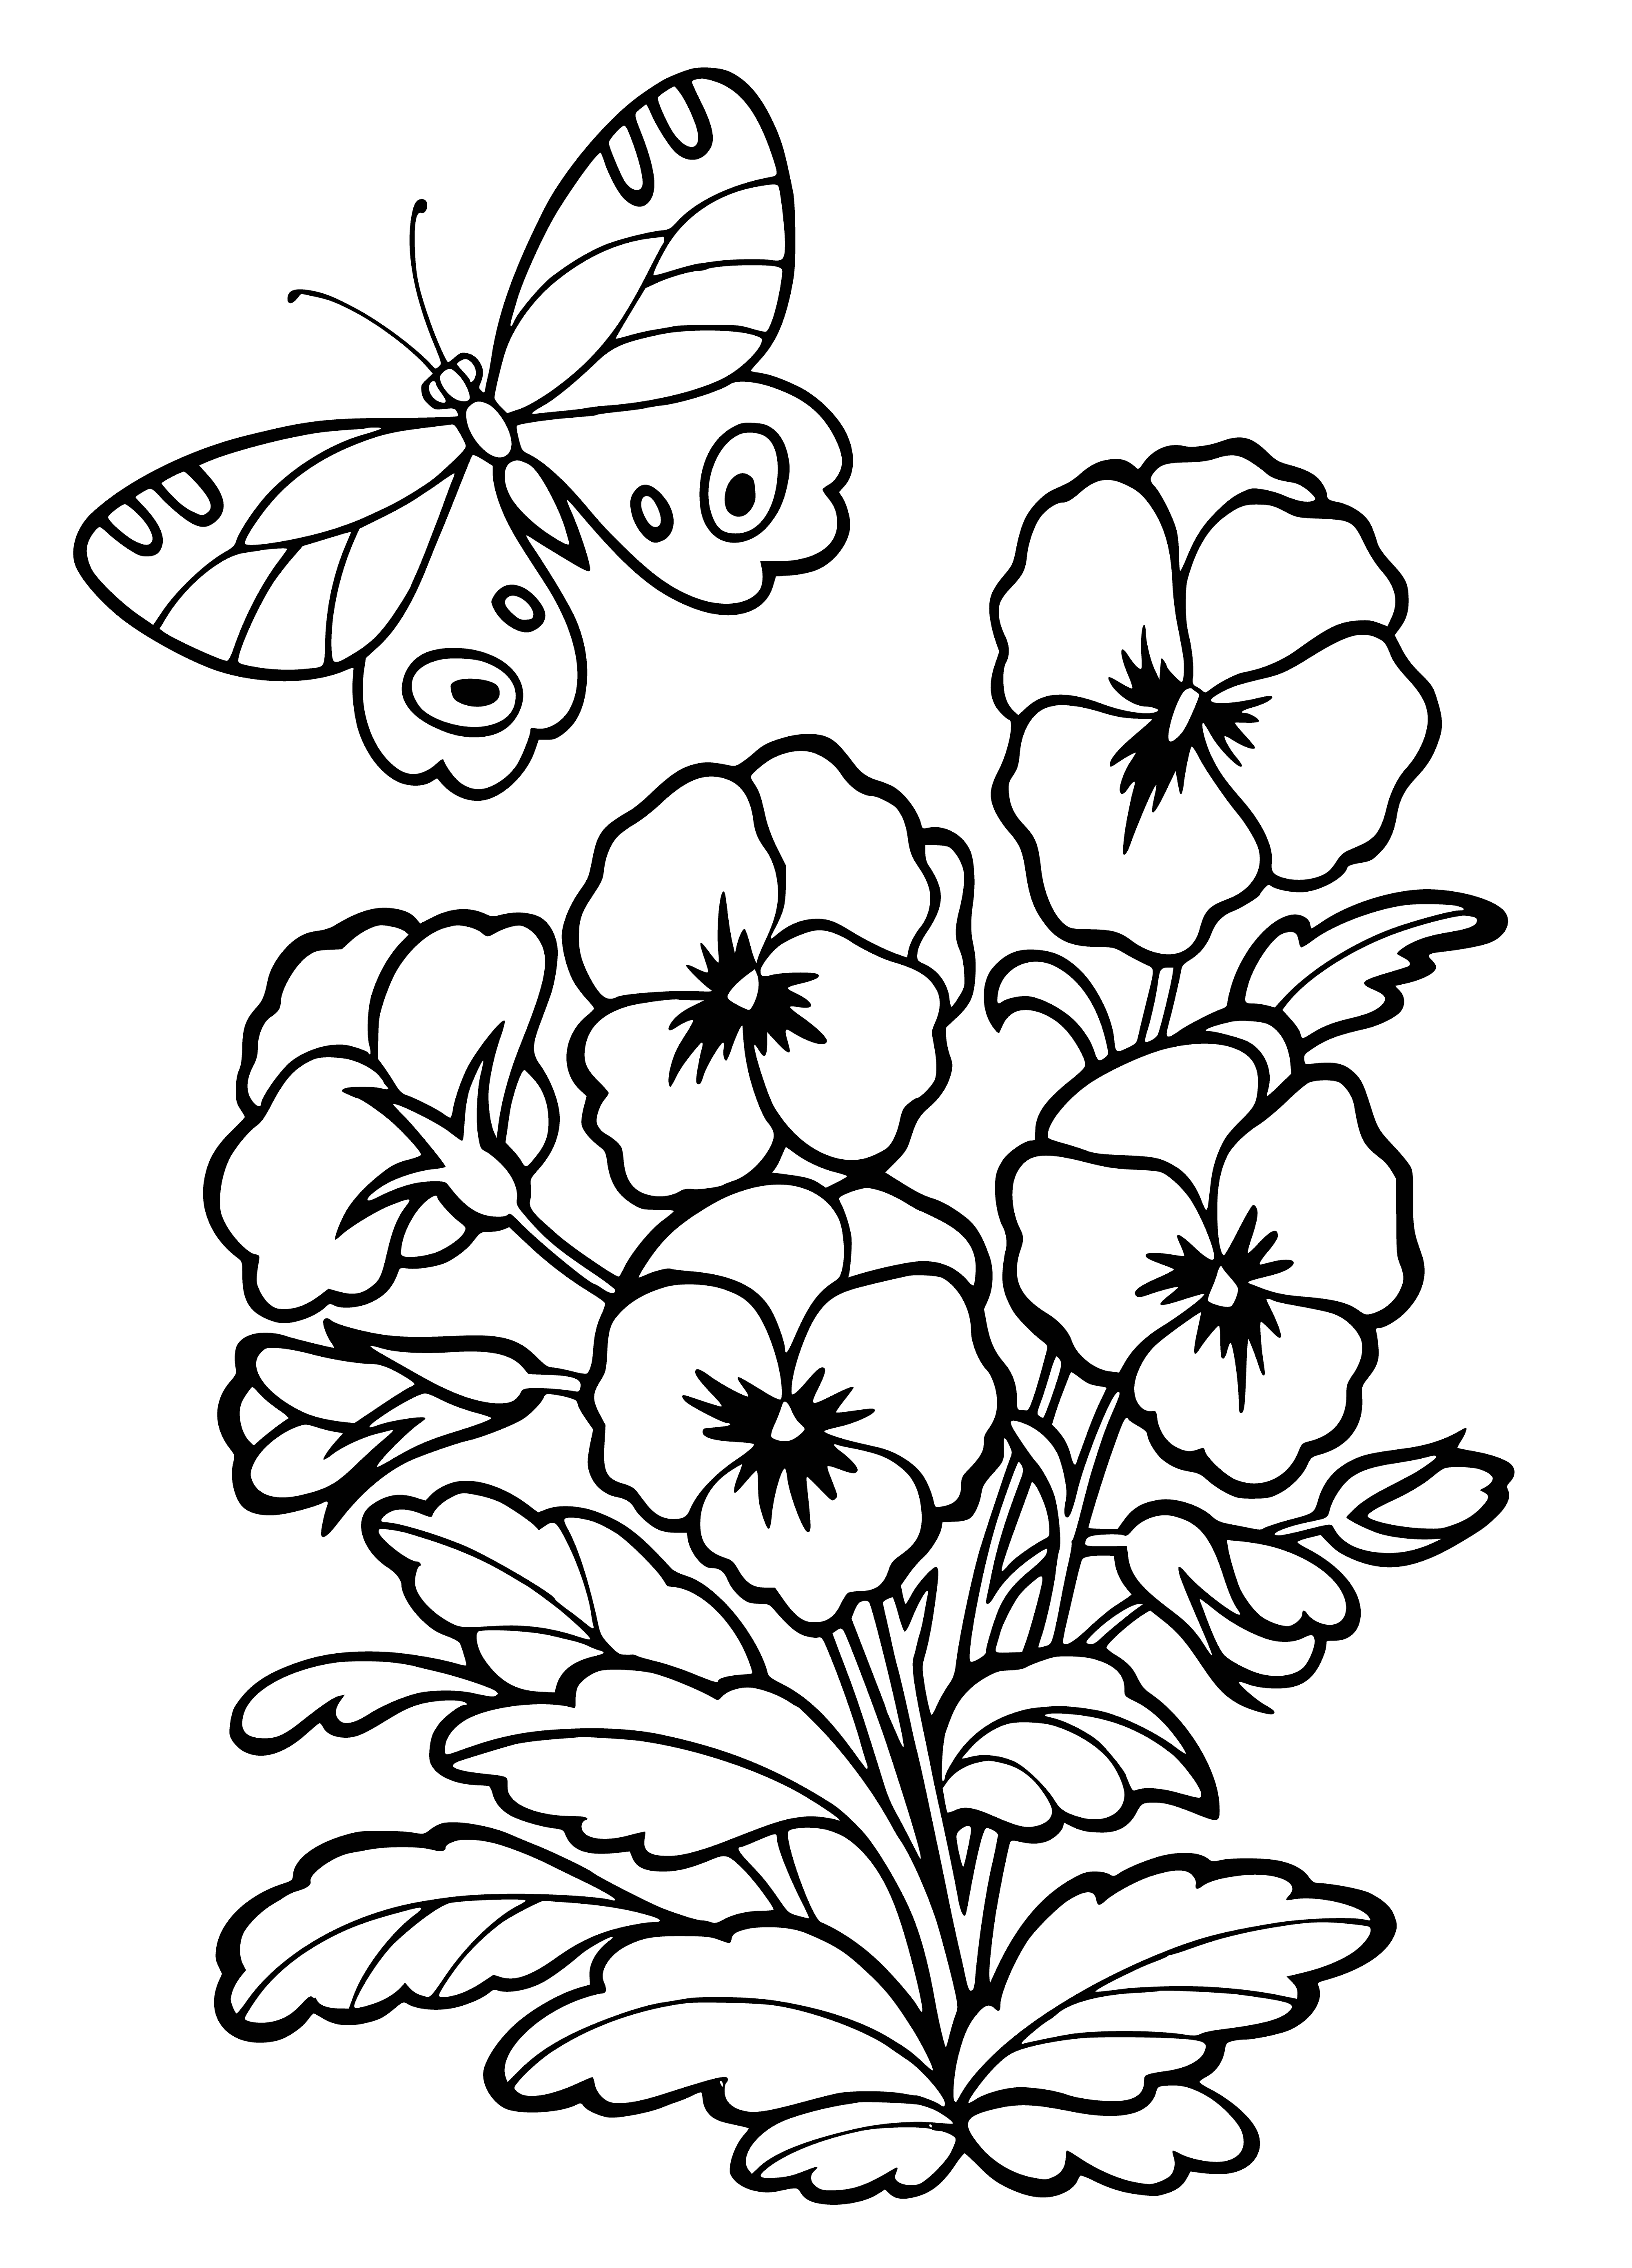 Pansies coloring page